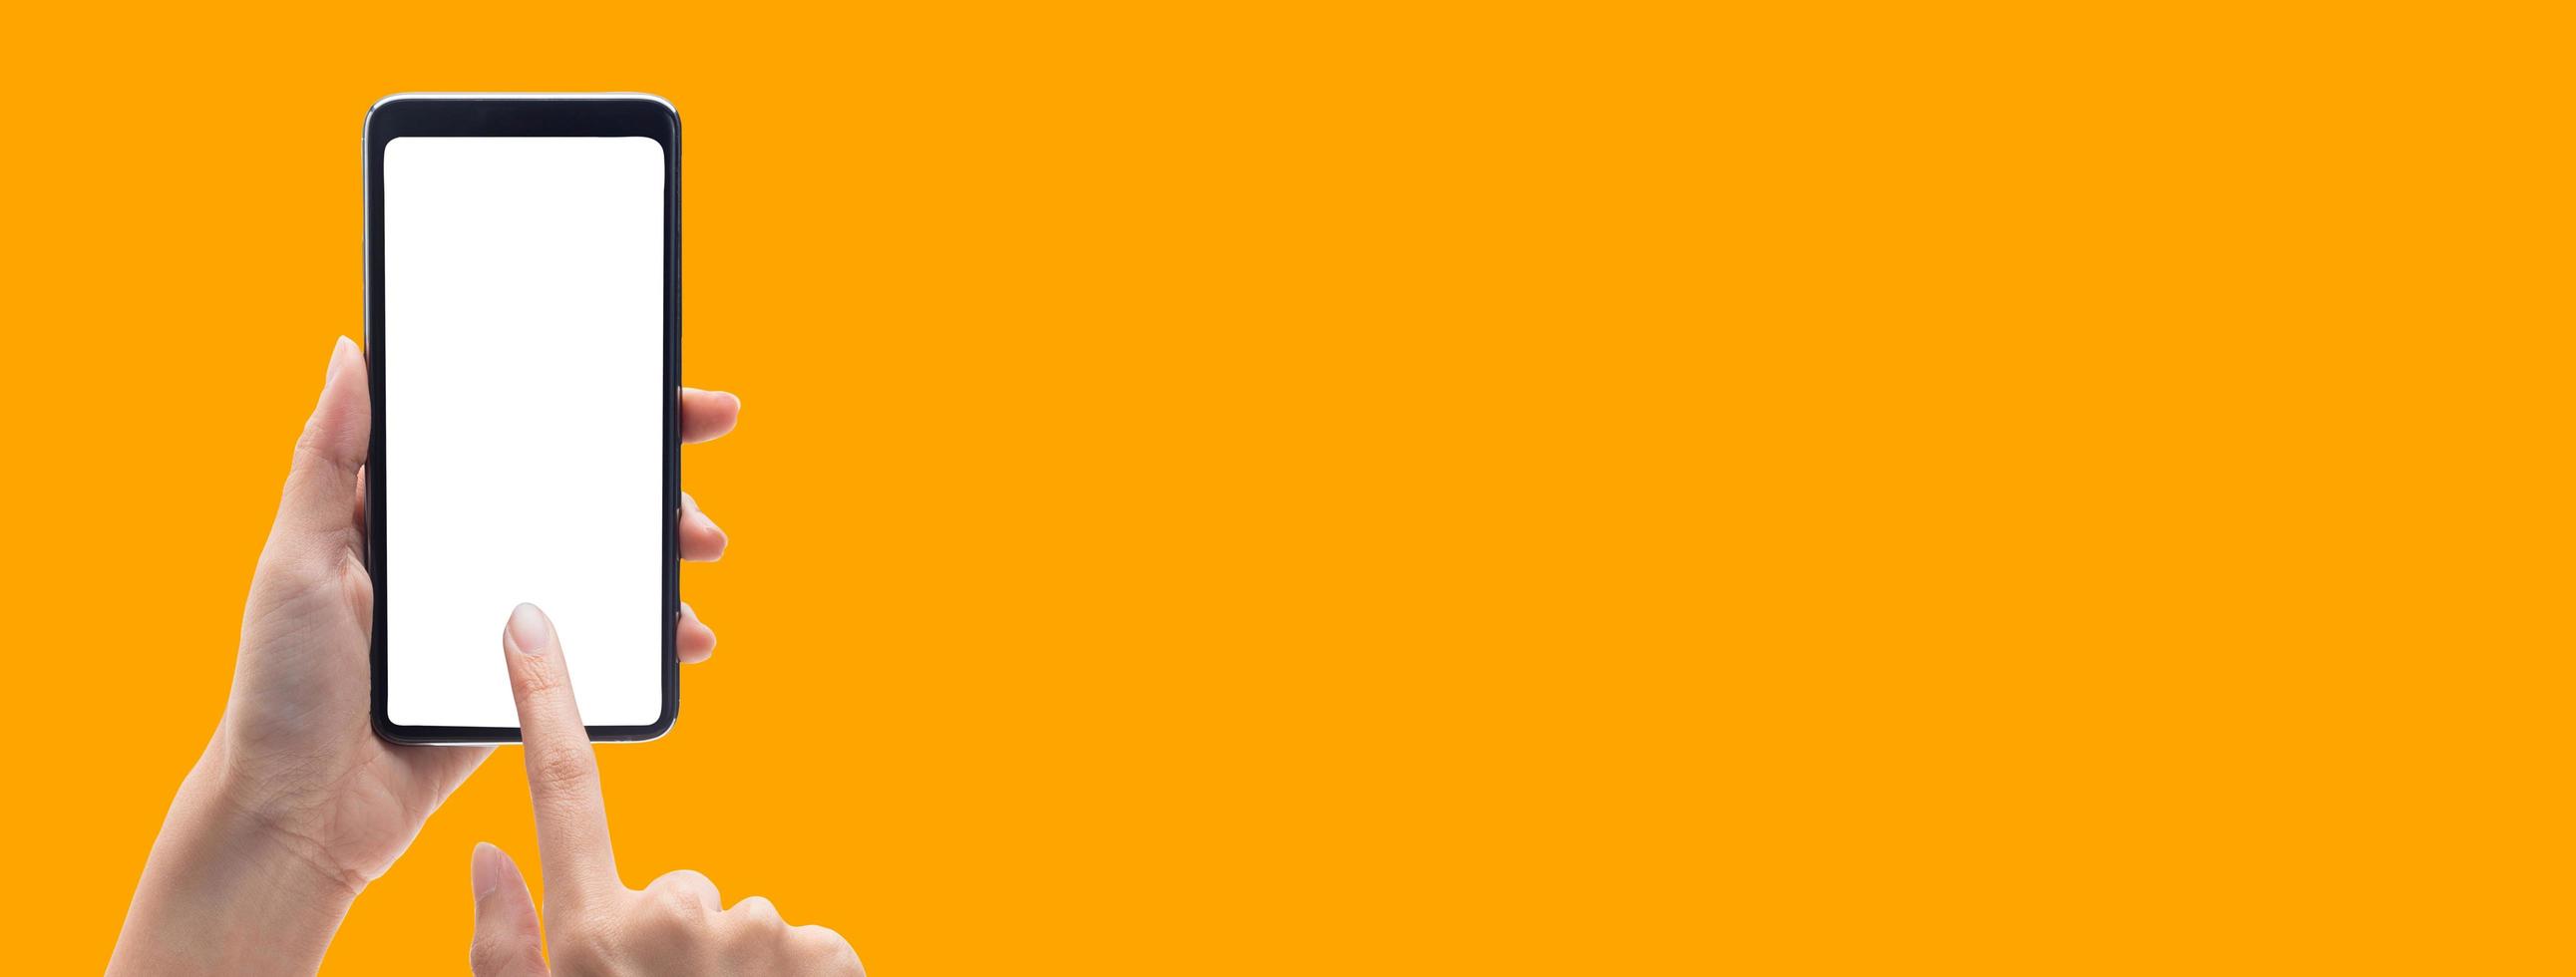 händer med smartphone på orange banner bakgrund foto